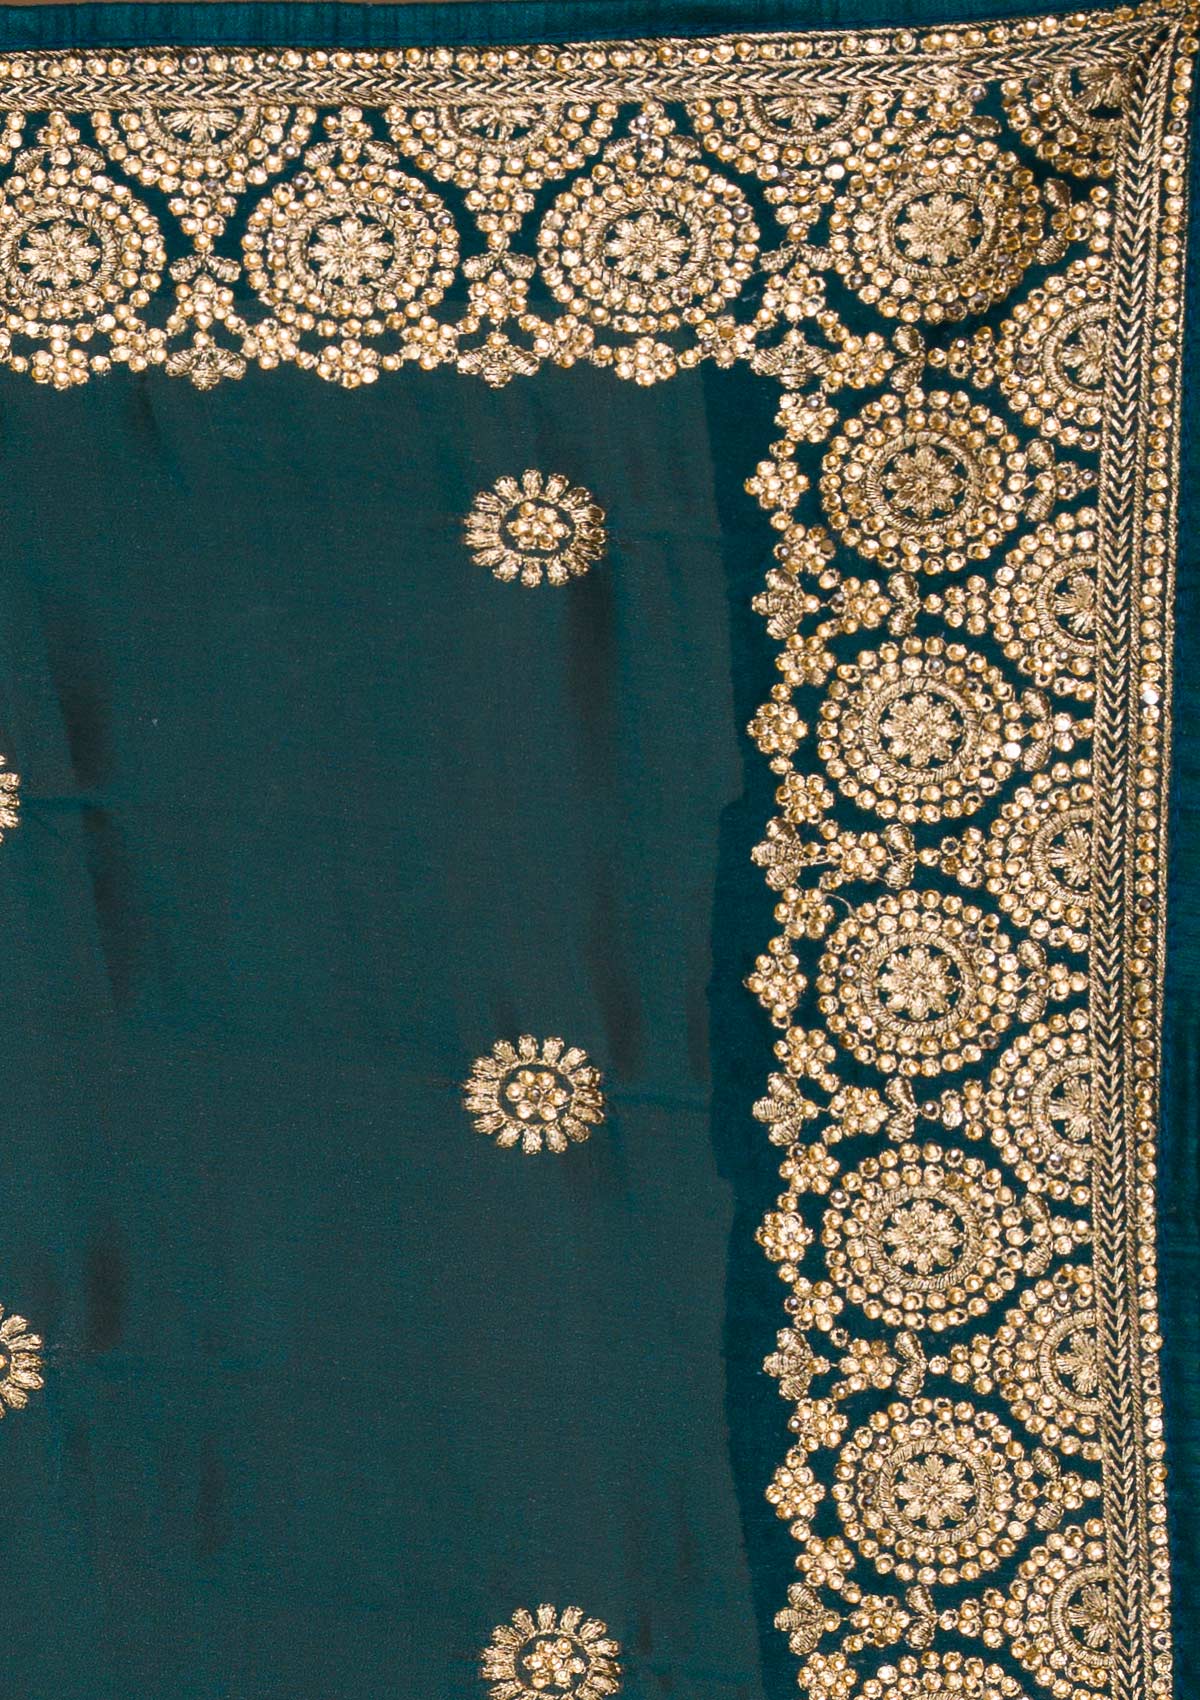 Buy Peacock Blue Zari Work Raw Silk Saree - Koskii